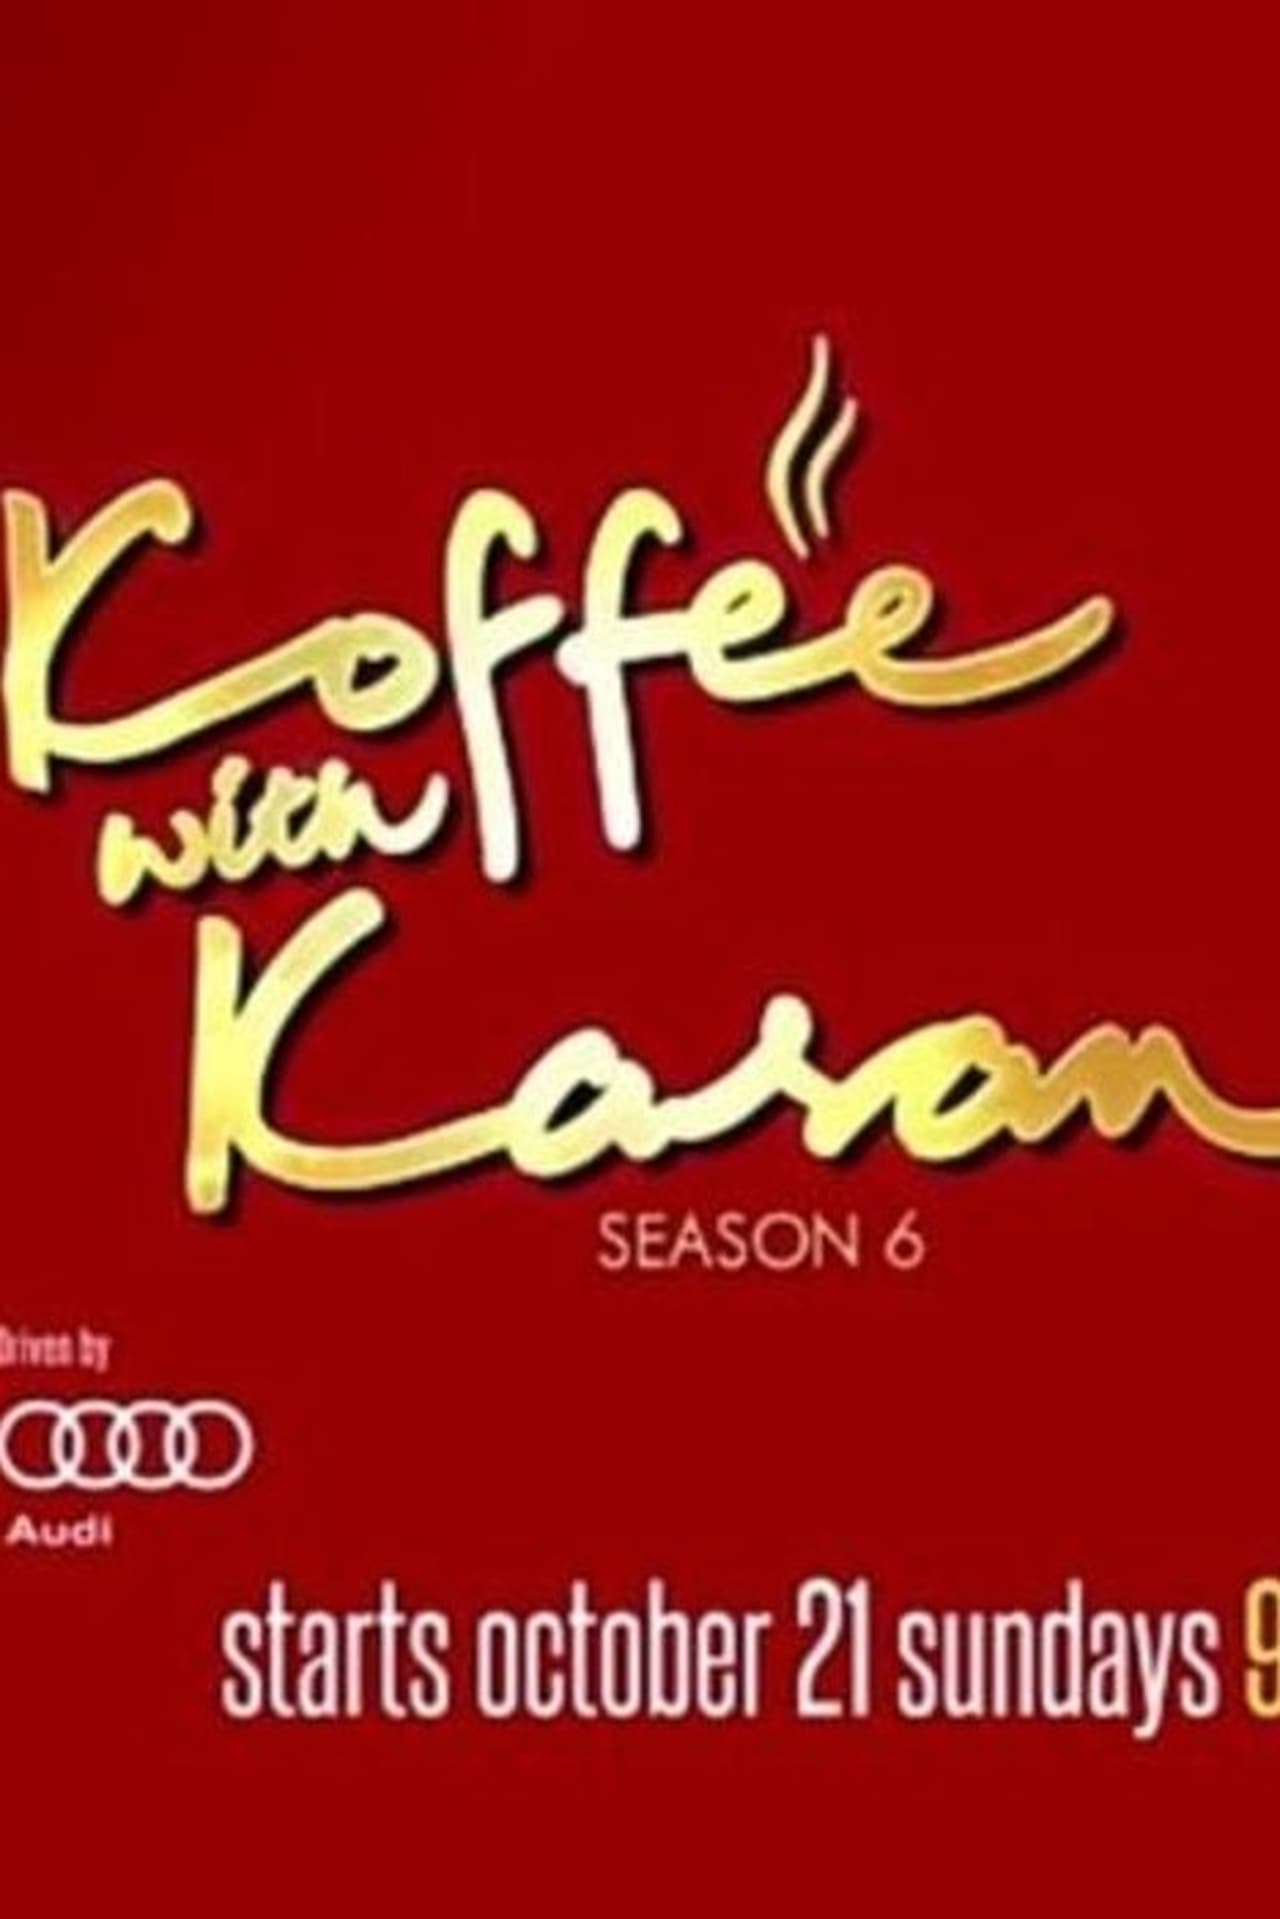 Koffee With Karan Season 6